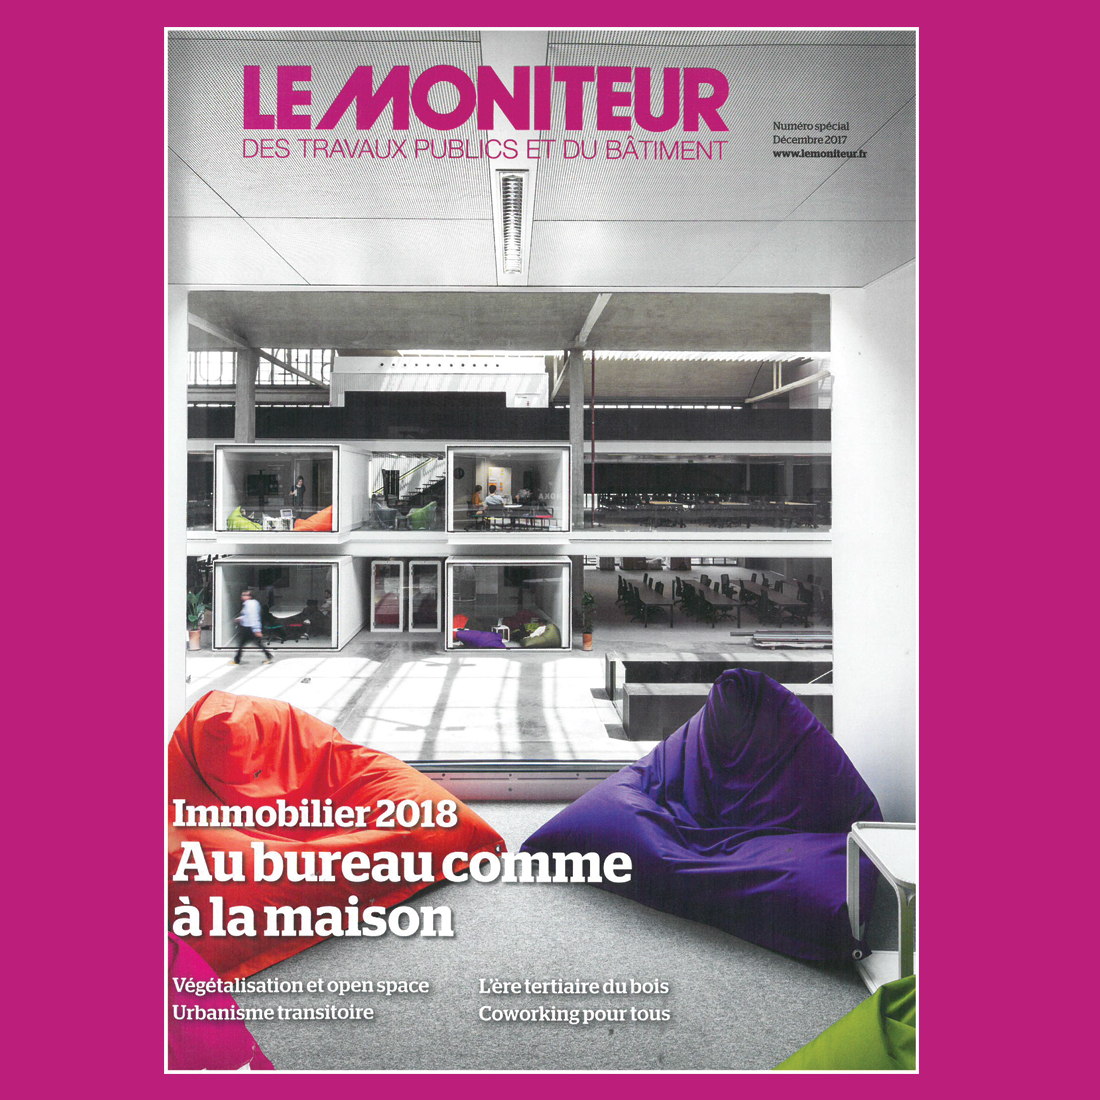 Le Moniteur – dec., 2017